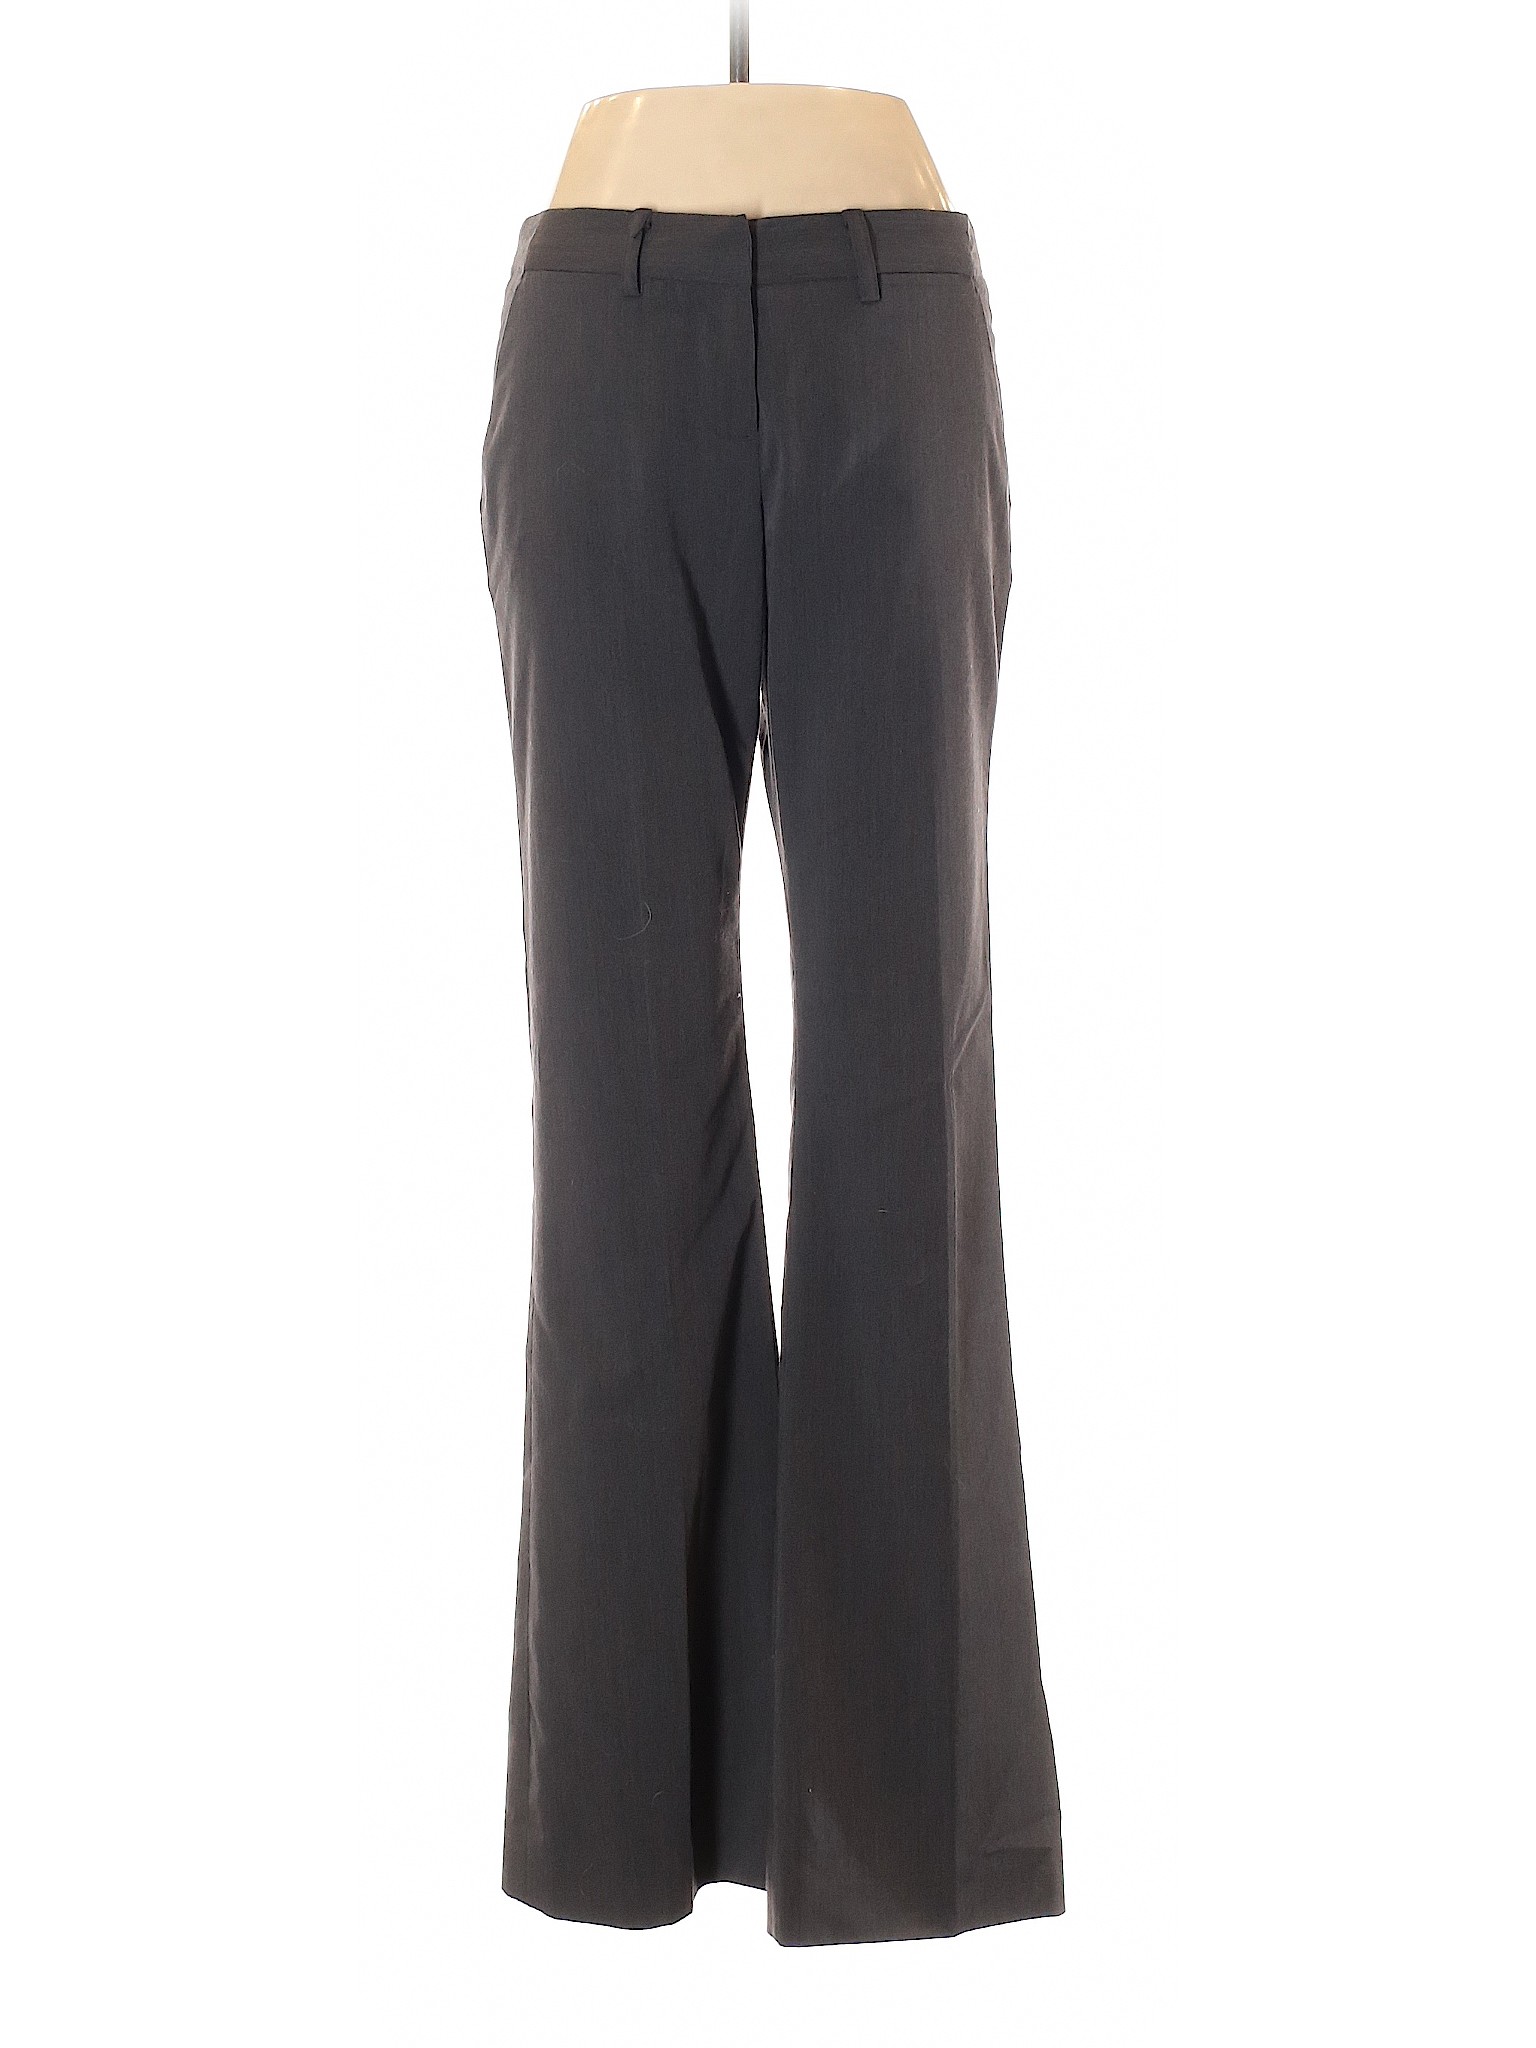 Simply Vera Vera Wang Women Black Dress Pants 2 | eBay